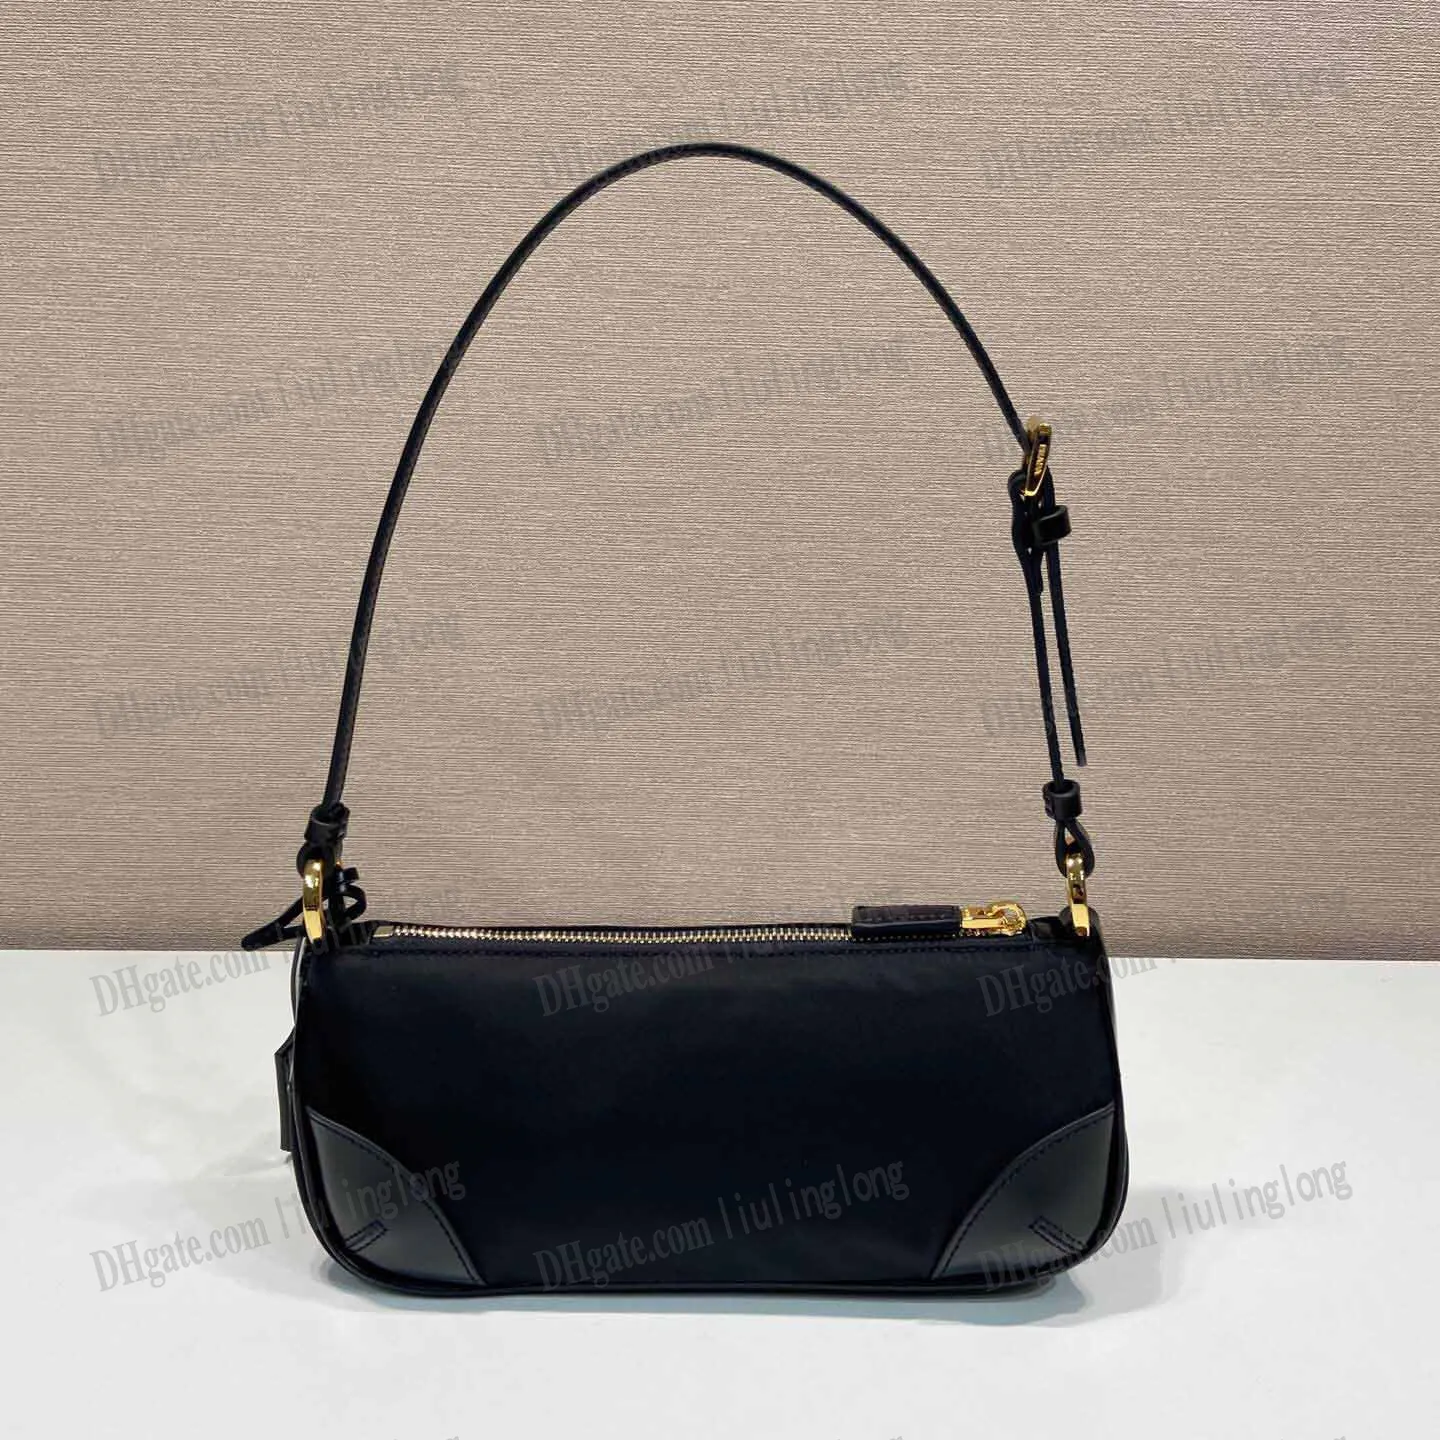 Nylon Redition 2002 Re-nylon et en cuir brossé Sacs de créateur de luxe sacs d'épaule femme sac noir sac à main sac à main sacs hobo sacs